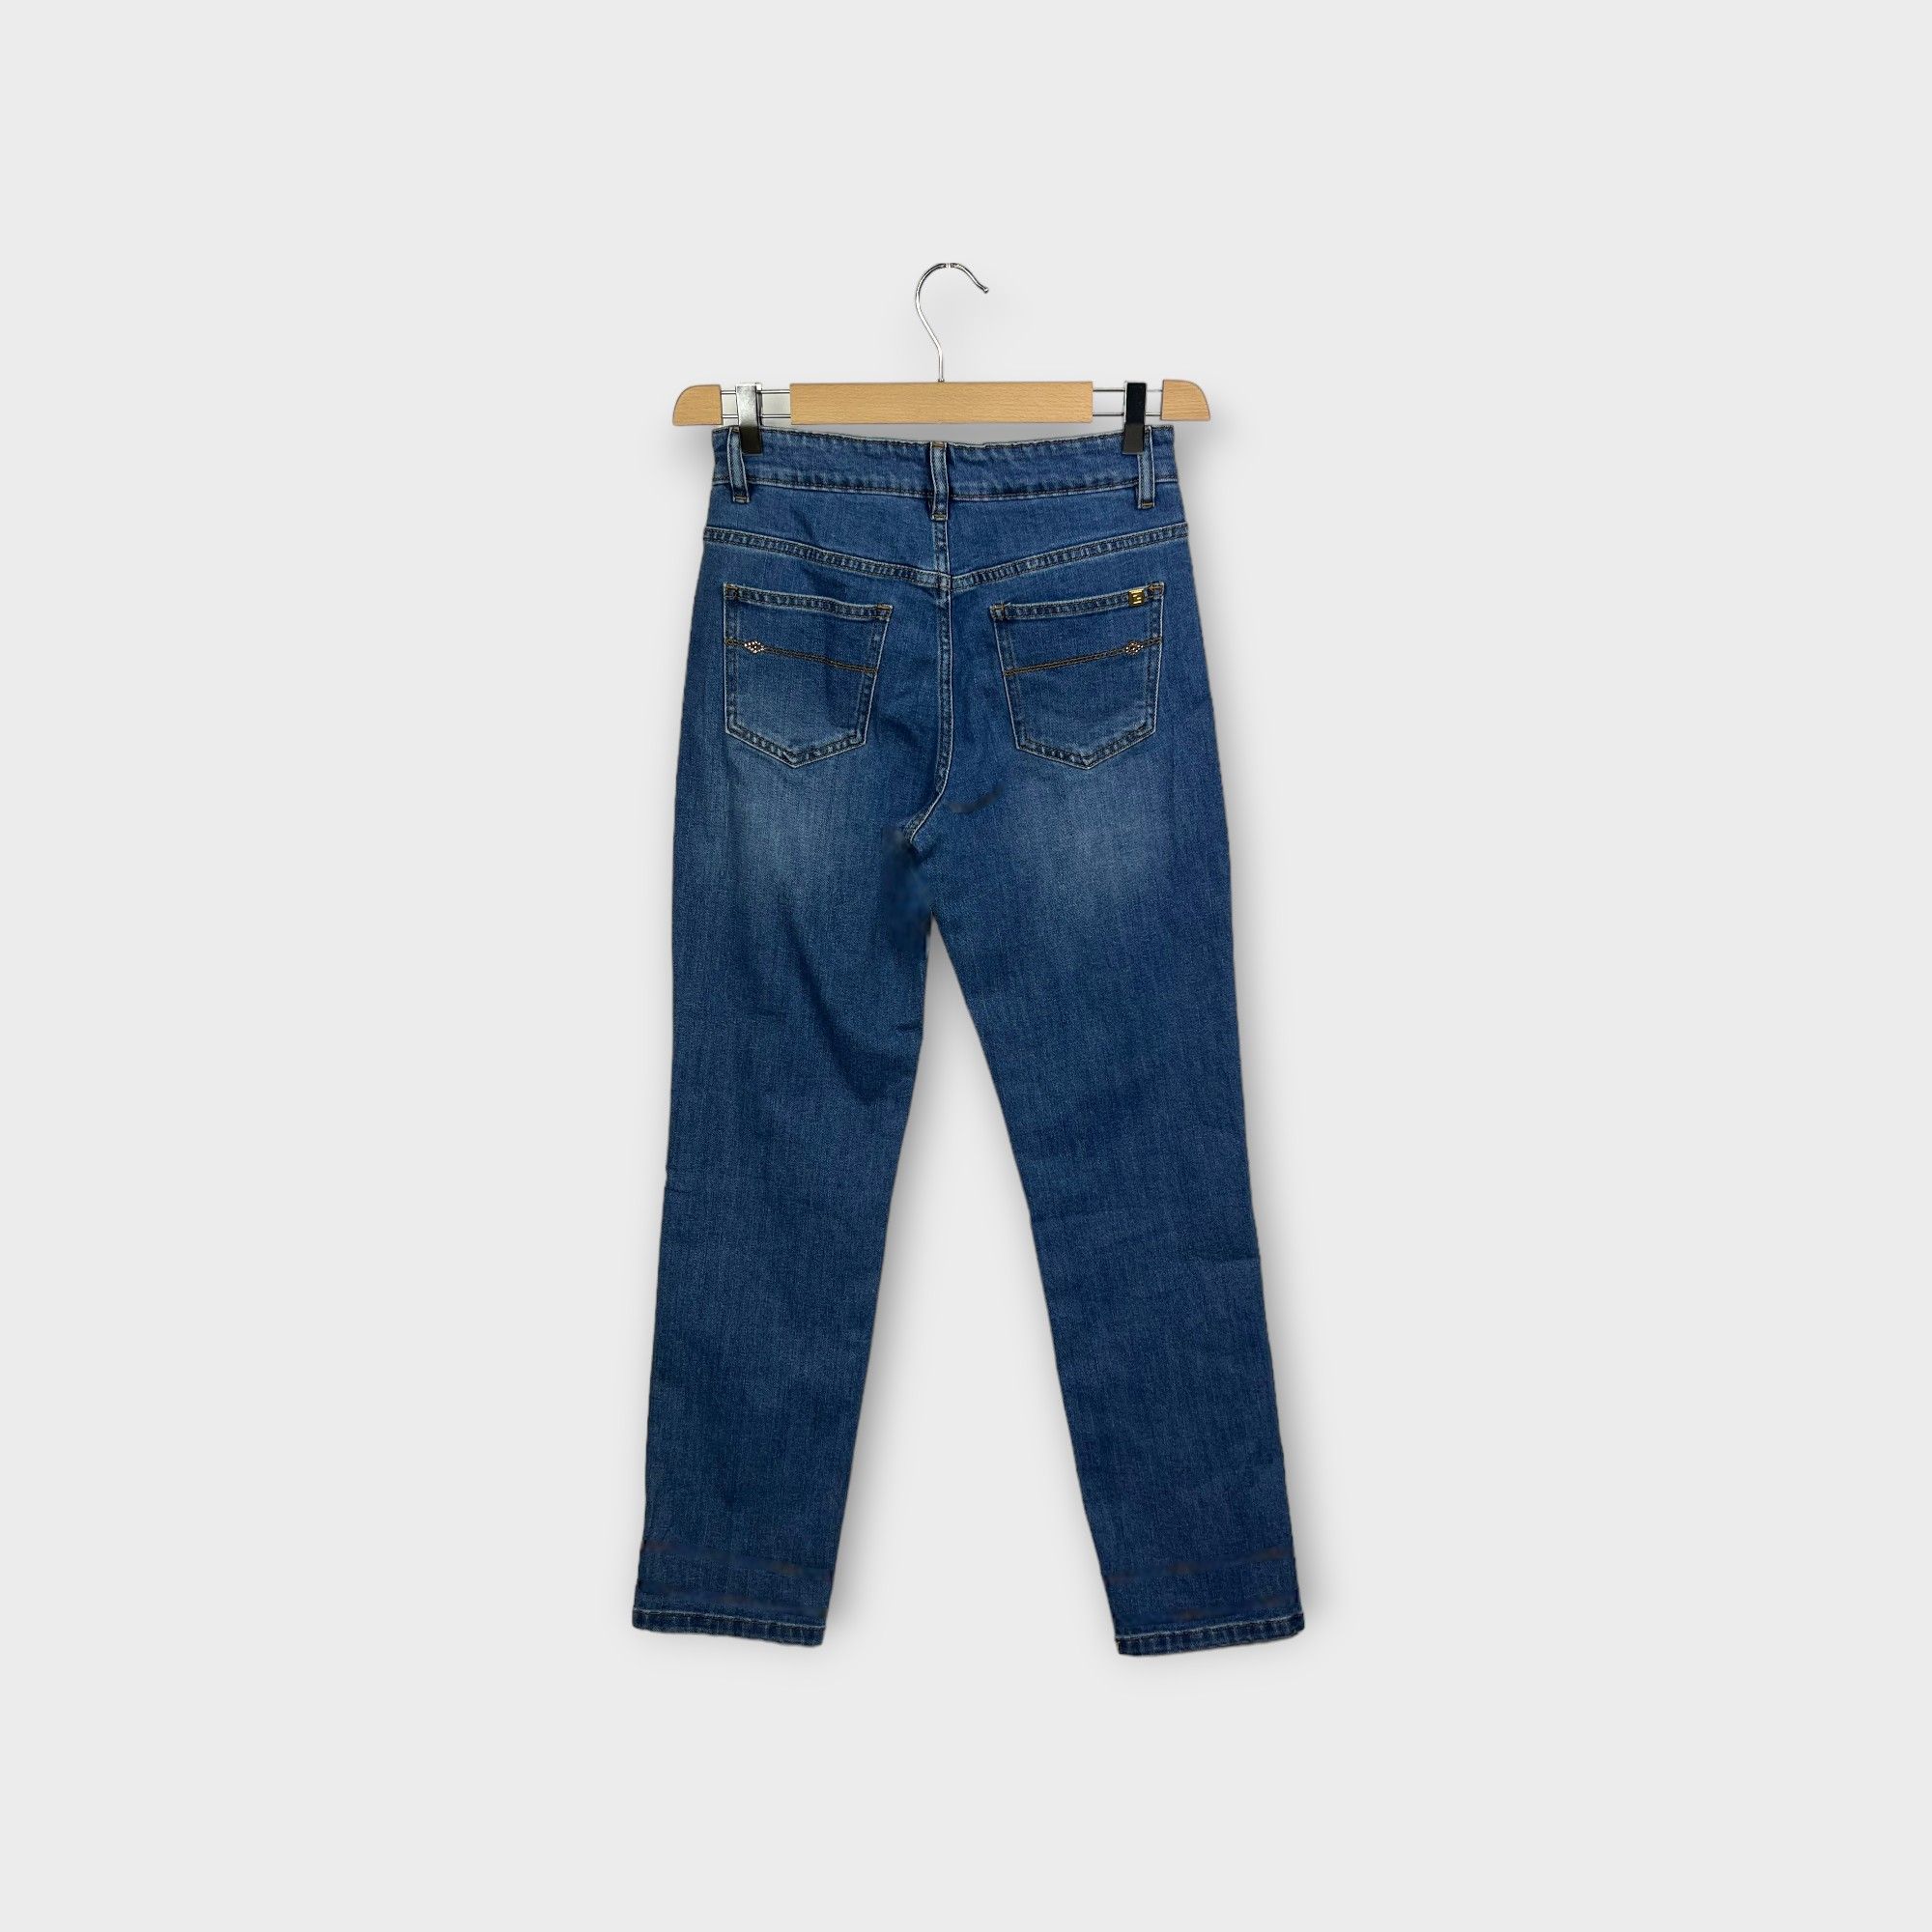 images/virtuemart/product/HELLEH Jeans cinque tasche donna modello carota in tela di cotone stretch colore denim 2.jpg